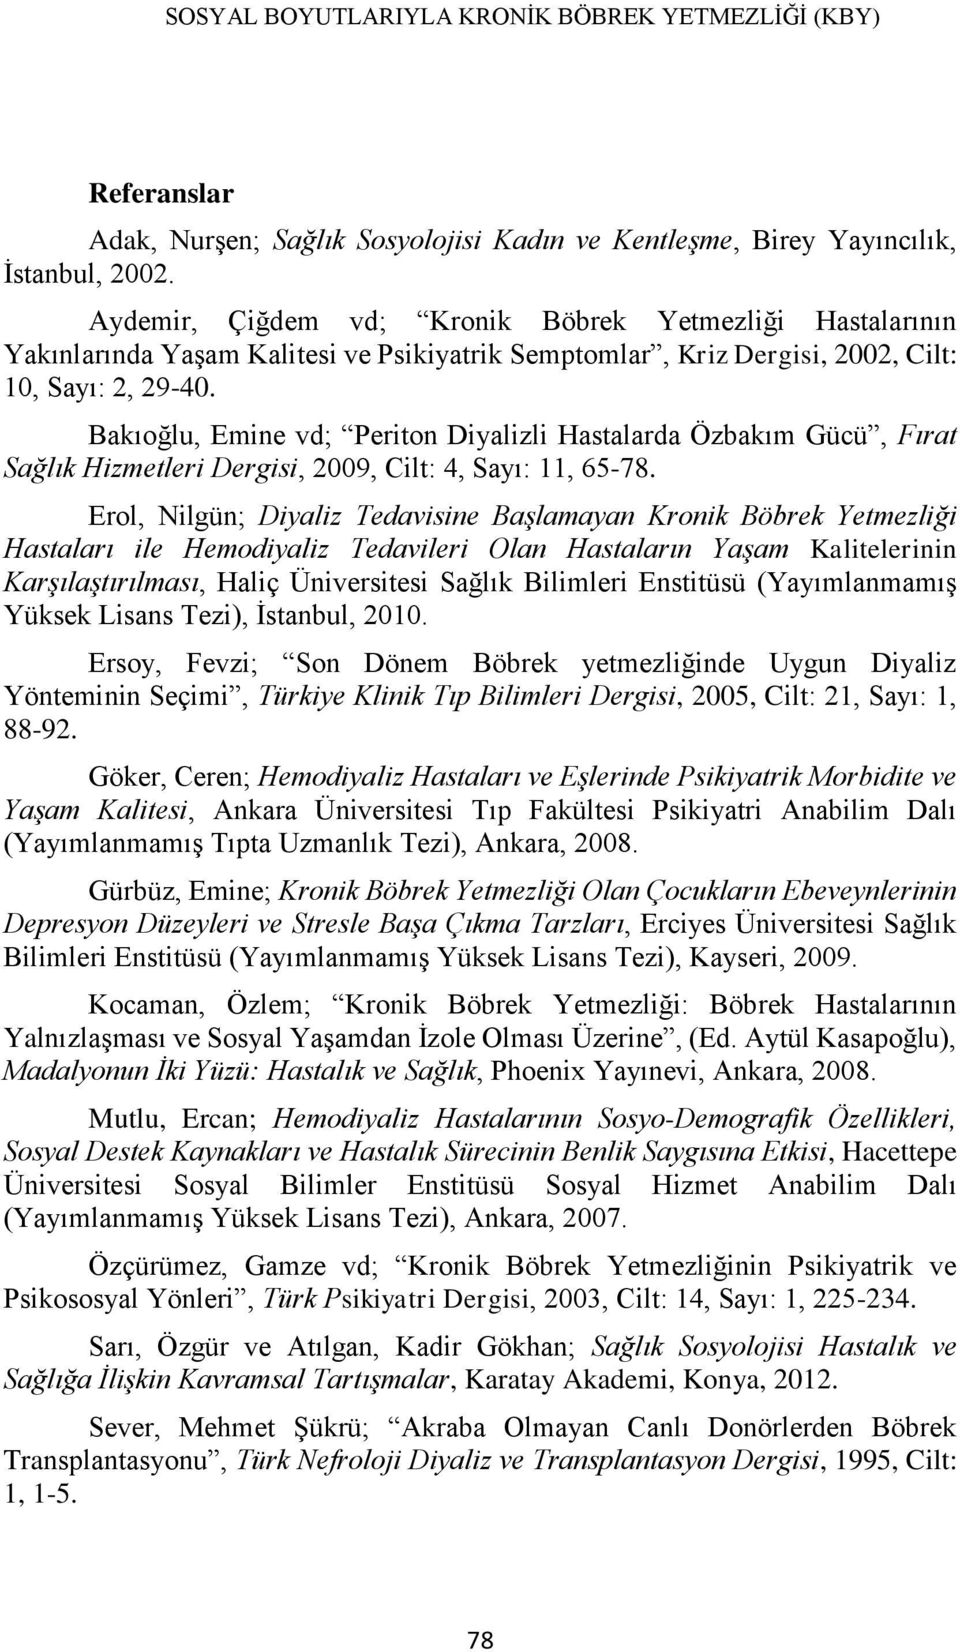 Bakıoğlu, Emine vd; Periton Diyalizli Hastalarda Özbakım Gücü, Fırat Sağlık Hizmetleri Dergisi, 2009, Cilt: 4, Sayı: 11, 65-78.